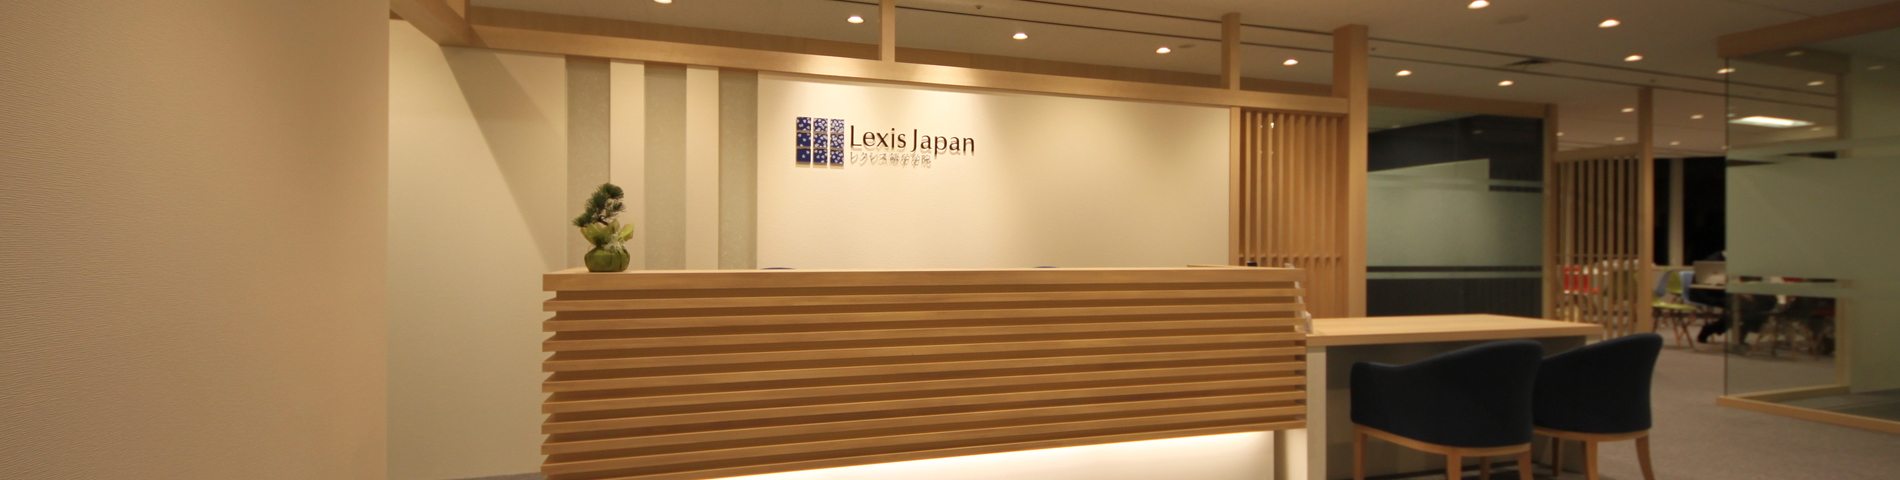 Lexis Japan bild 1